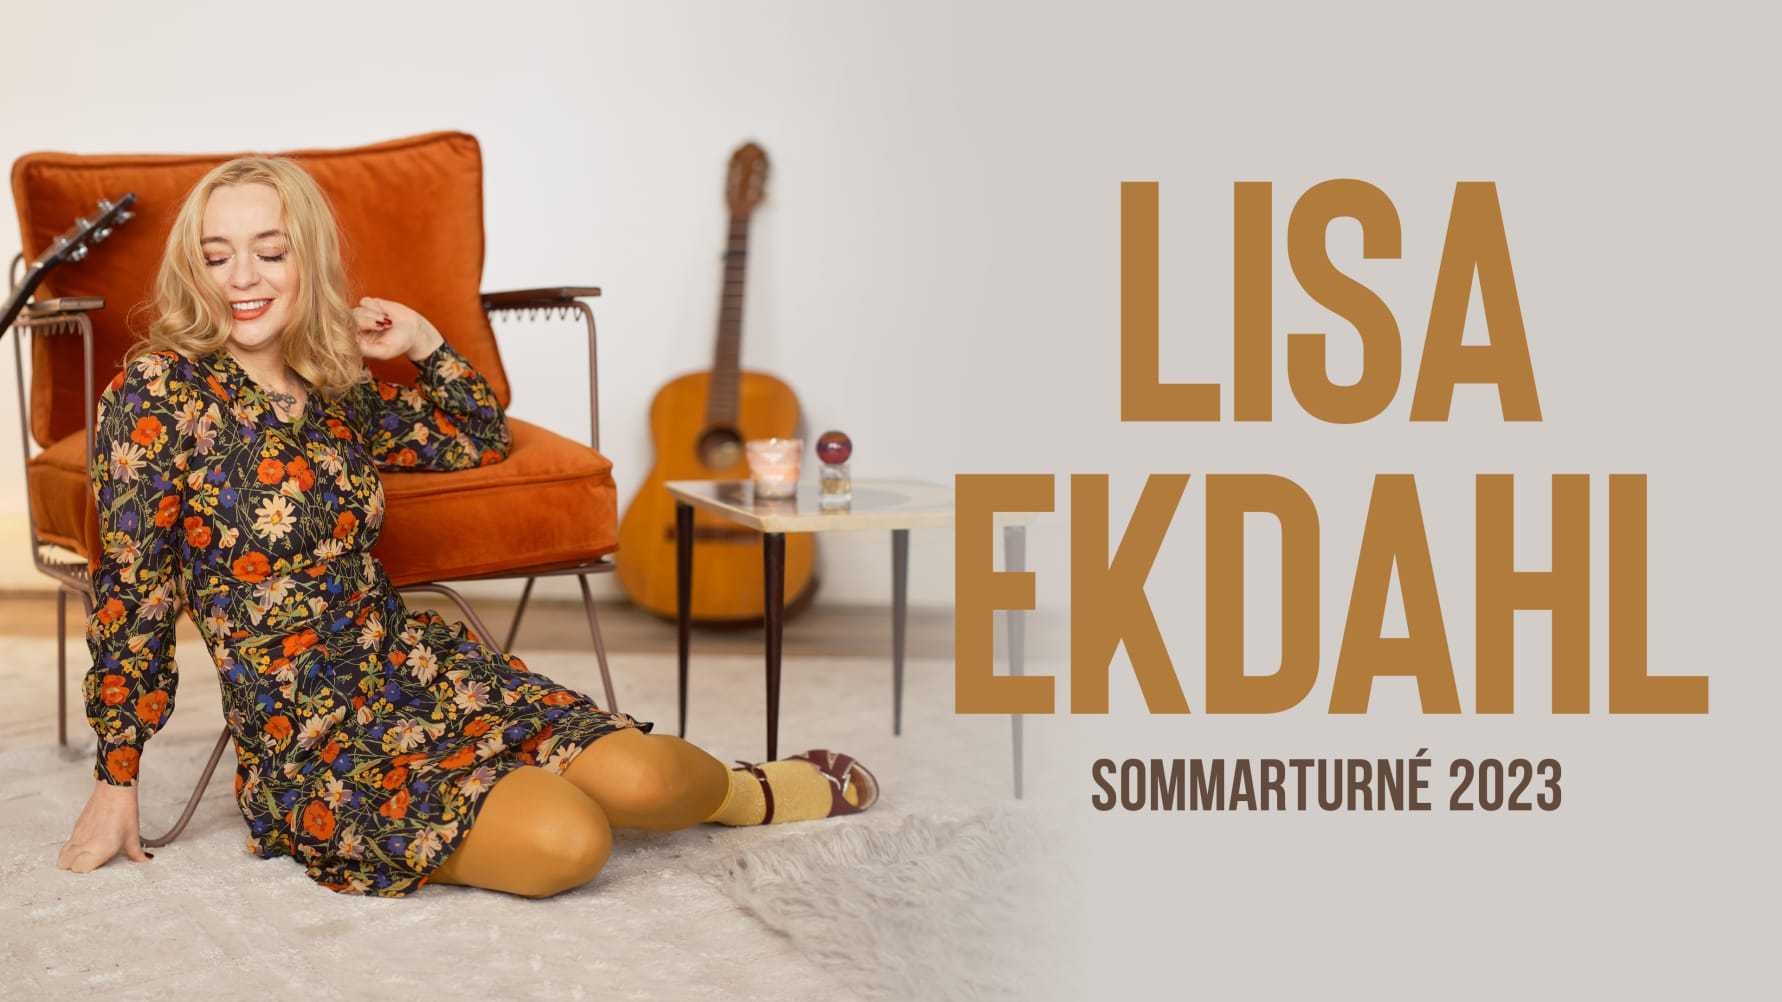 Lisa Ekdahl aktuell med sommarturné efter succén med nytt album